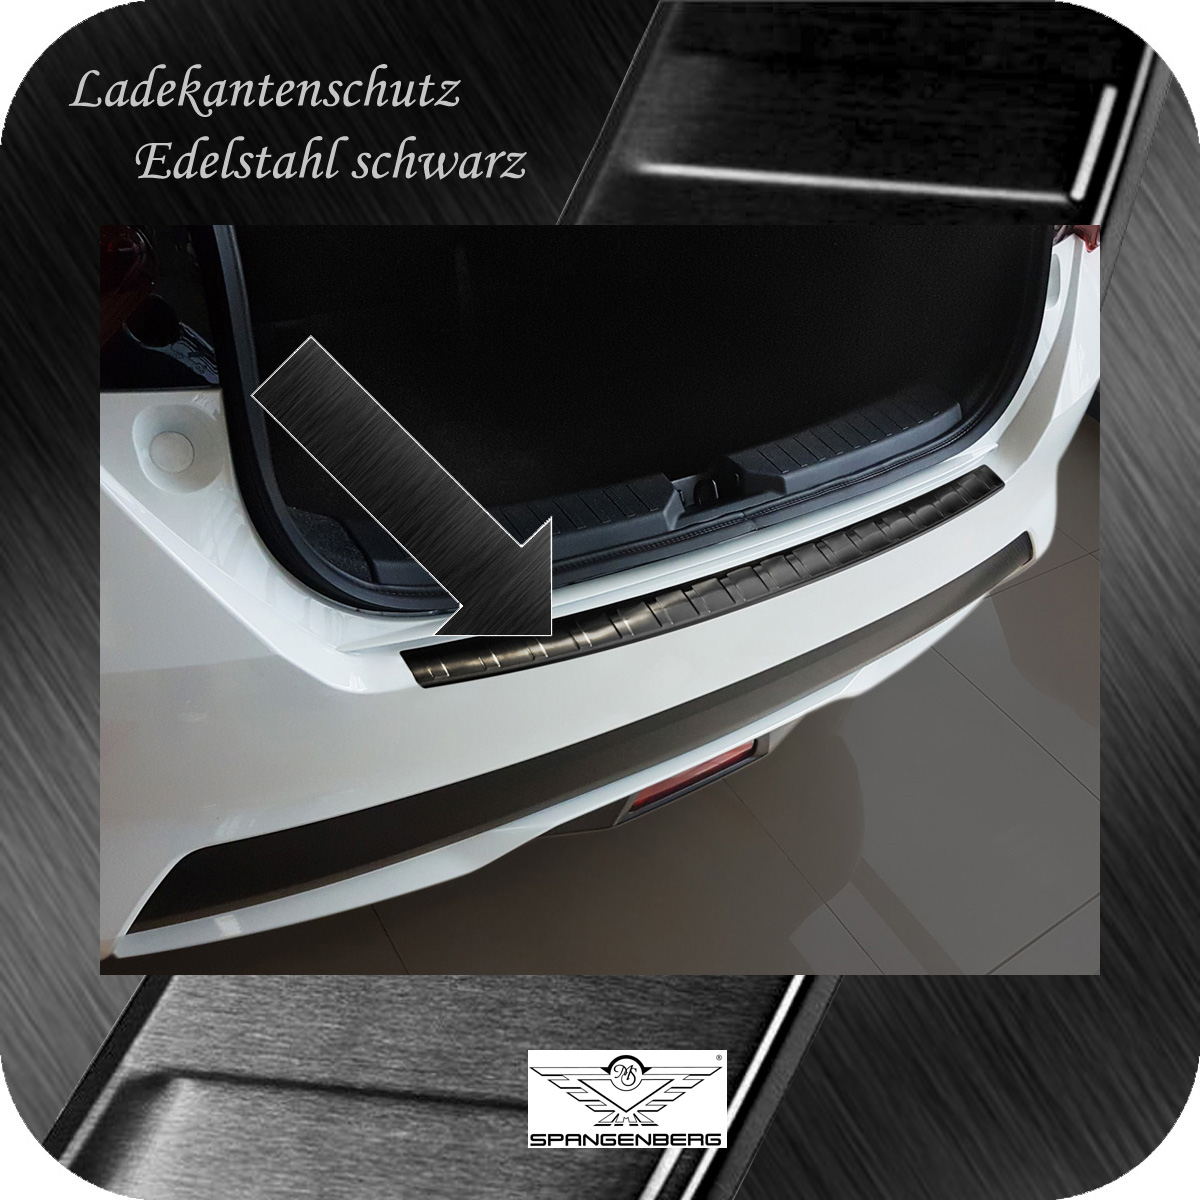 Ladekantenschutz Edelstahl schwarz für Nissan Micra V Typ K14 10.2016- 3245124